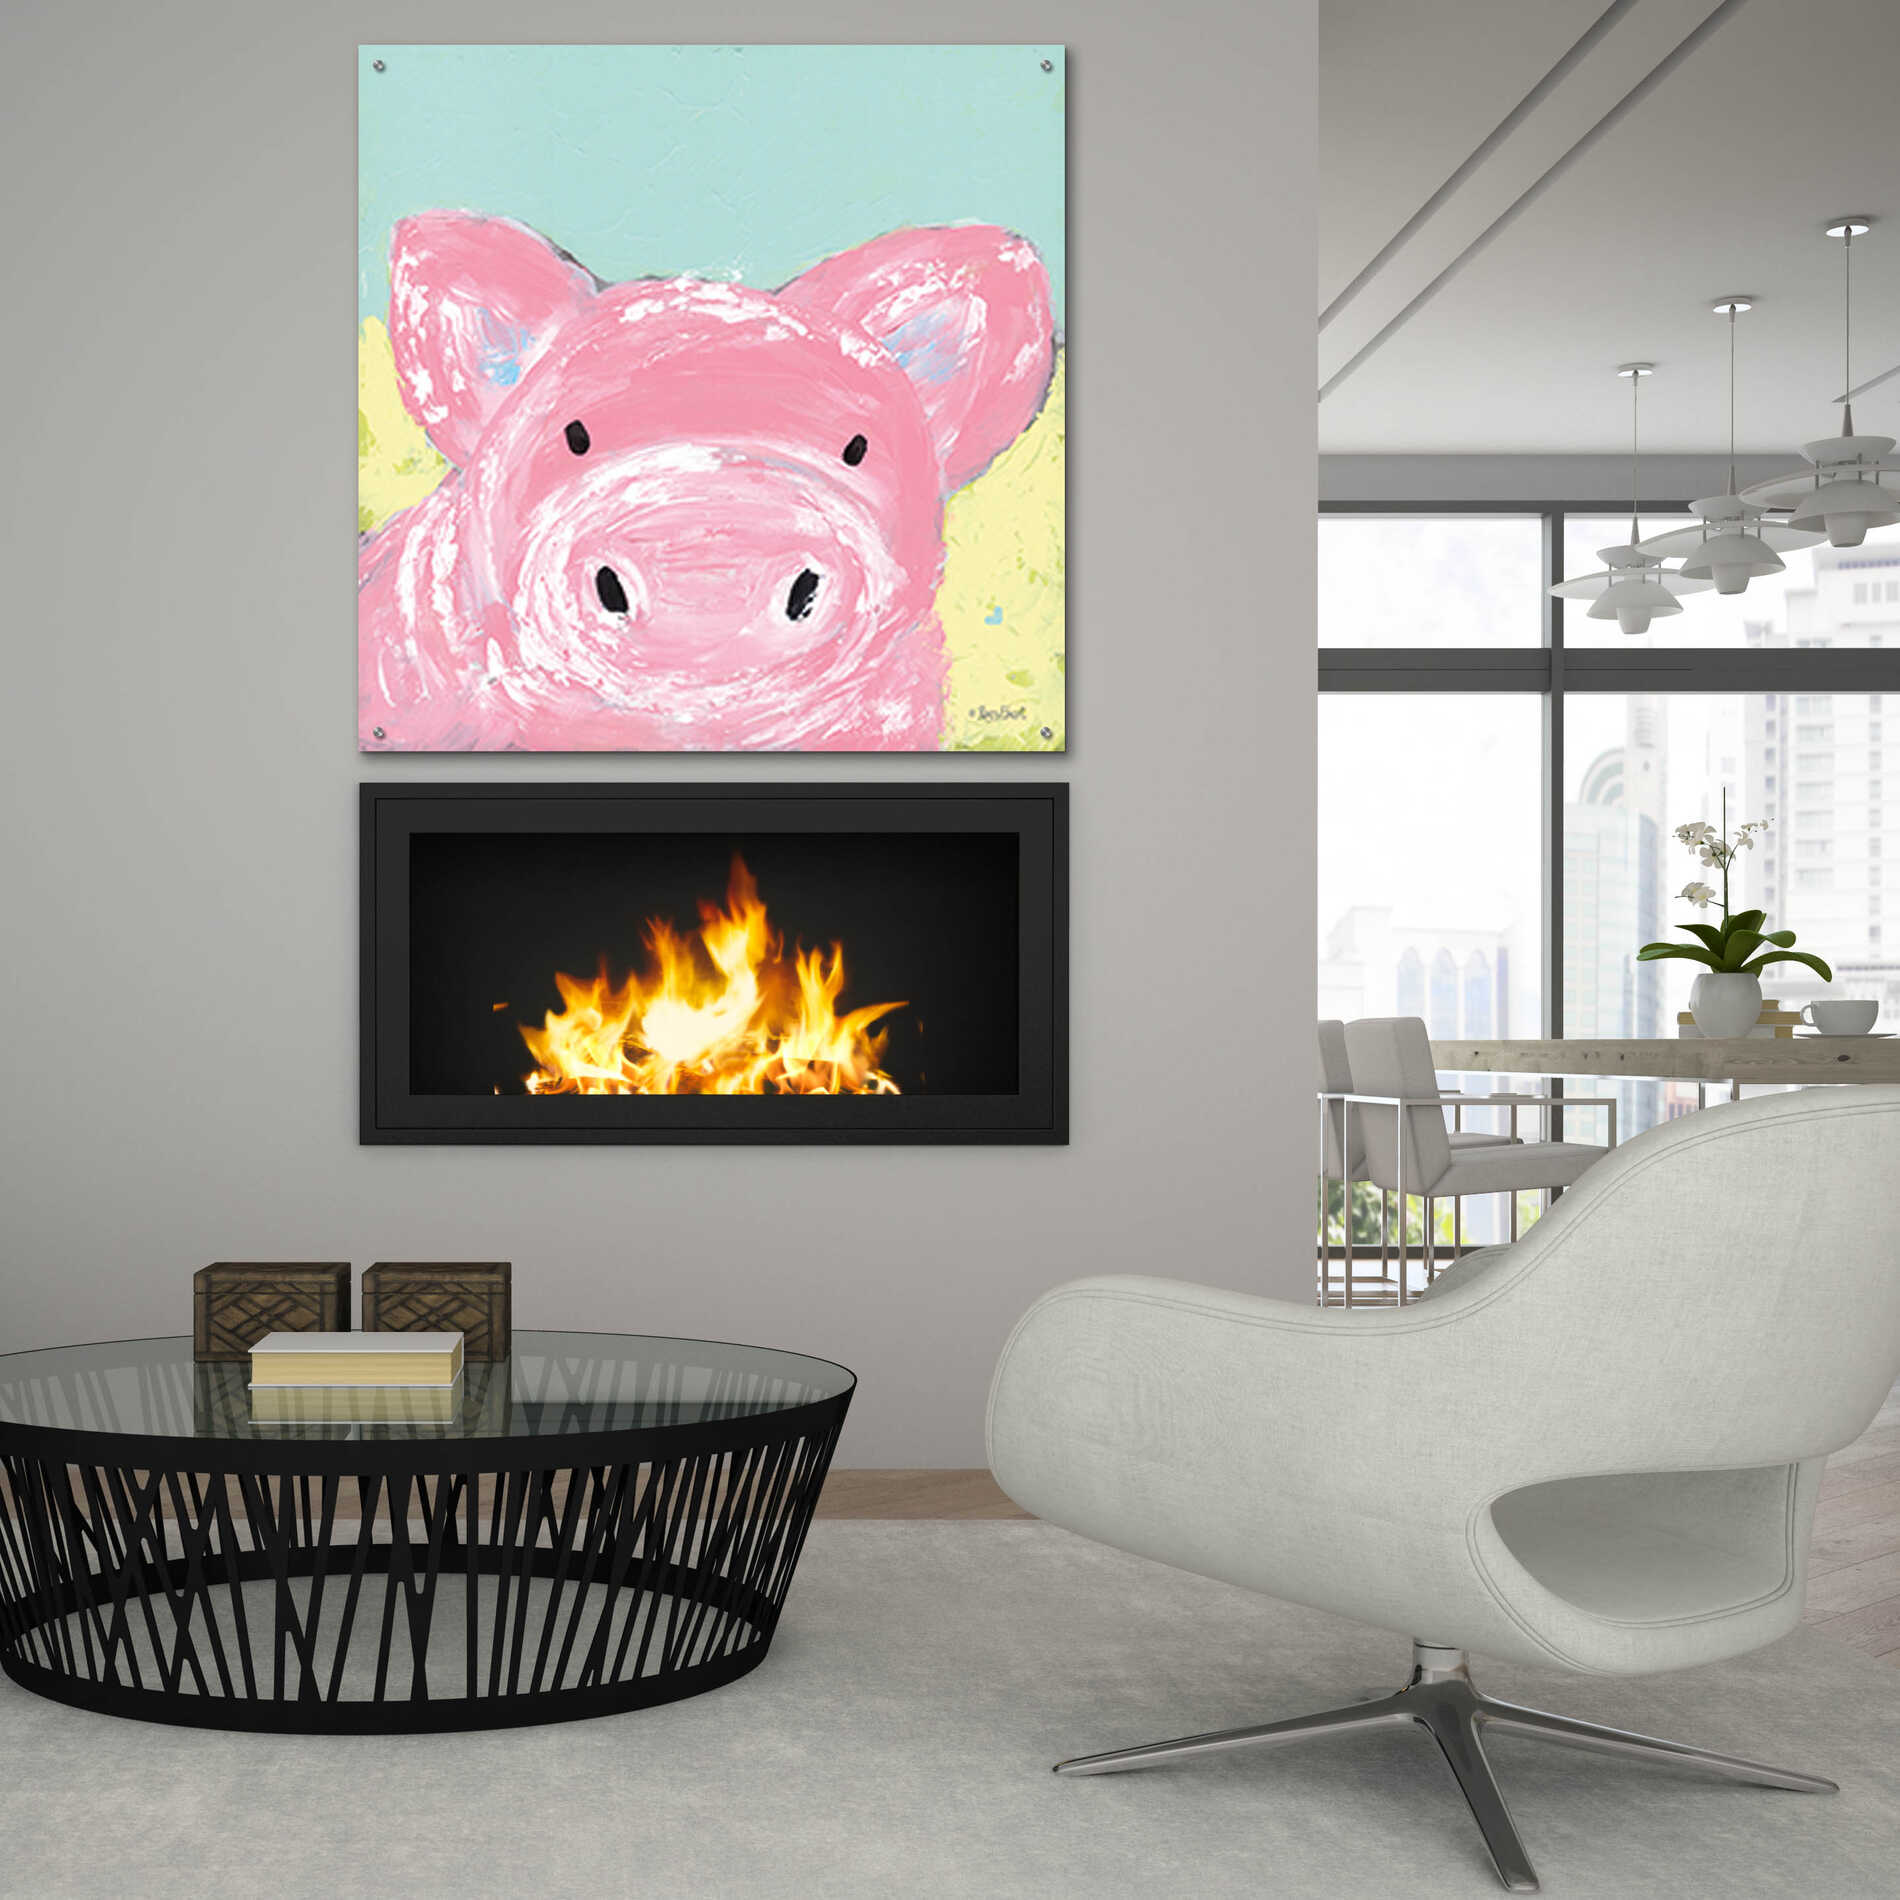 Epic Art 'Oink' by Roey Ebert, Acrylic Glass Wall Art,36x36